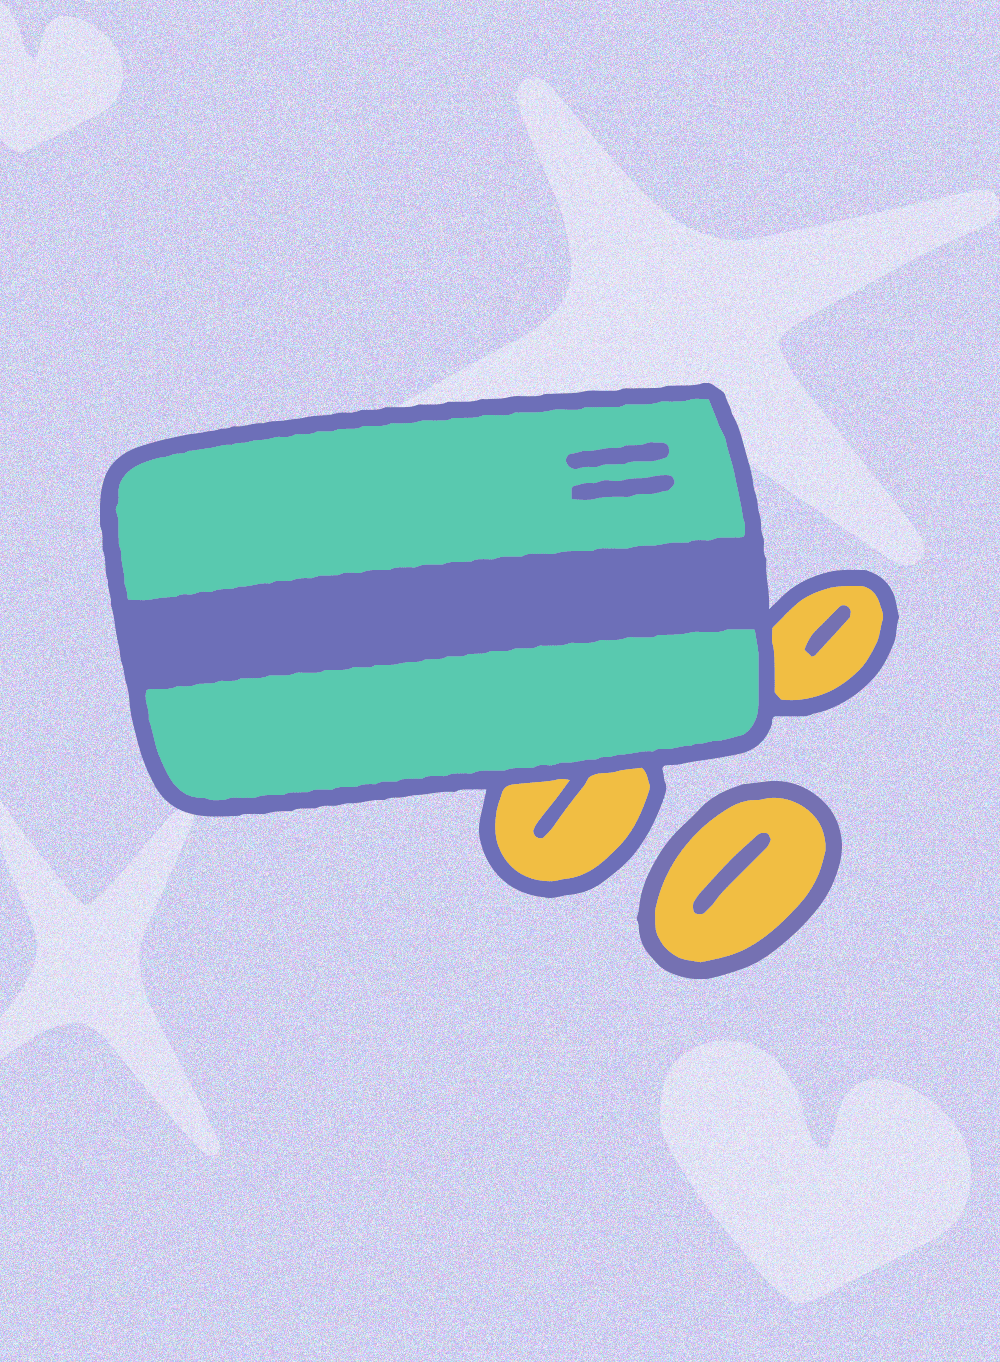 image de carte bancaire pour symboliser la possibilité d'acheter une carte cadeau